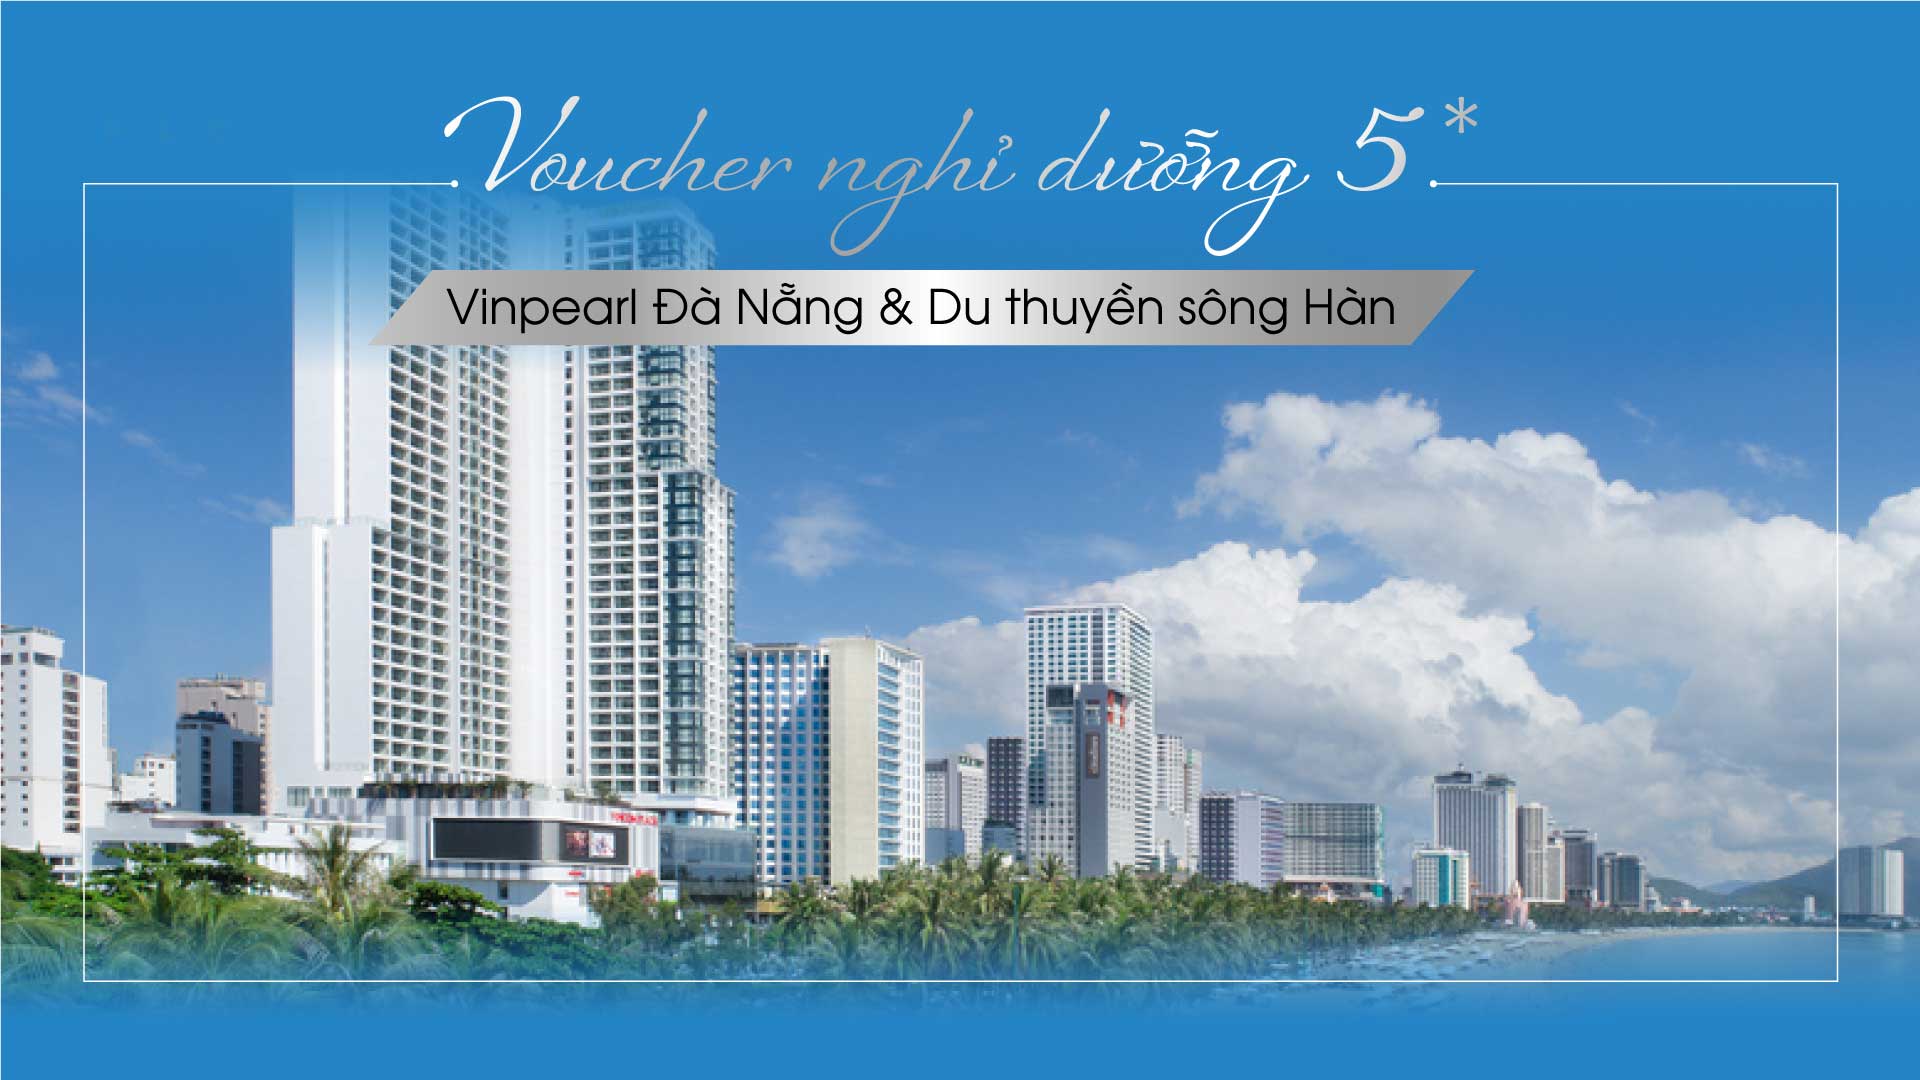 Voucher nghỉ dưỡng đặc biệt 5*: Vinpearl Condotel Riverfront Đà Nẵng + Du thuyền sông Hàn